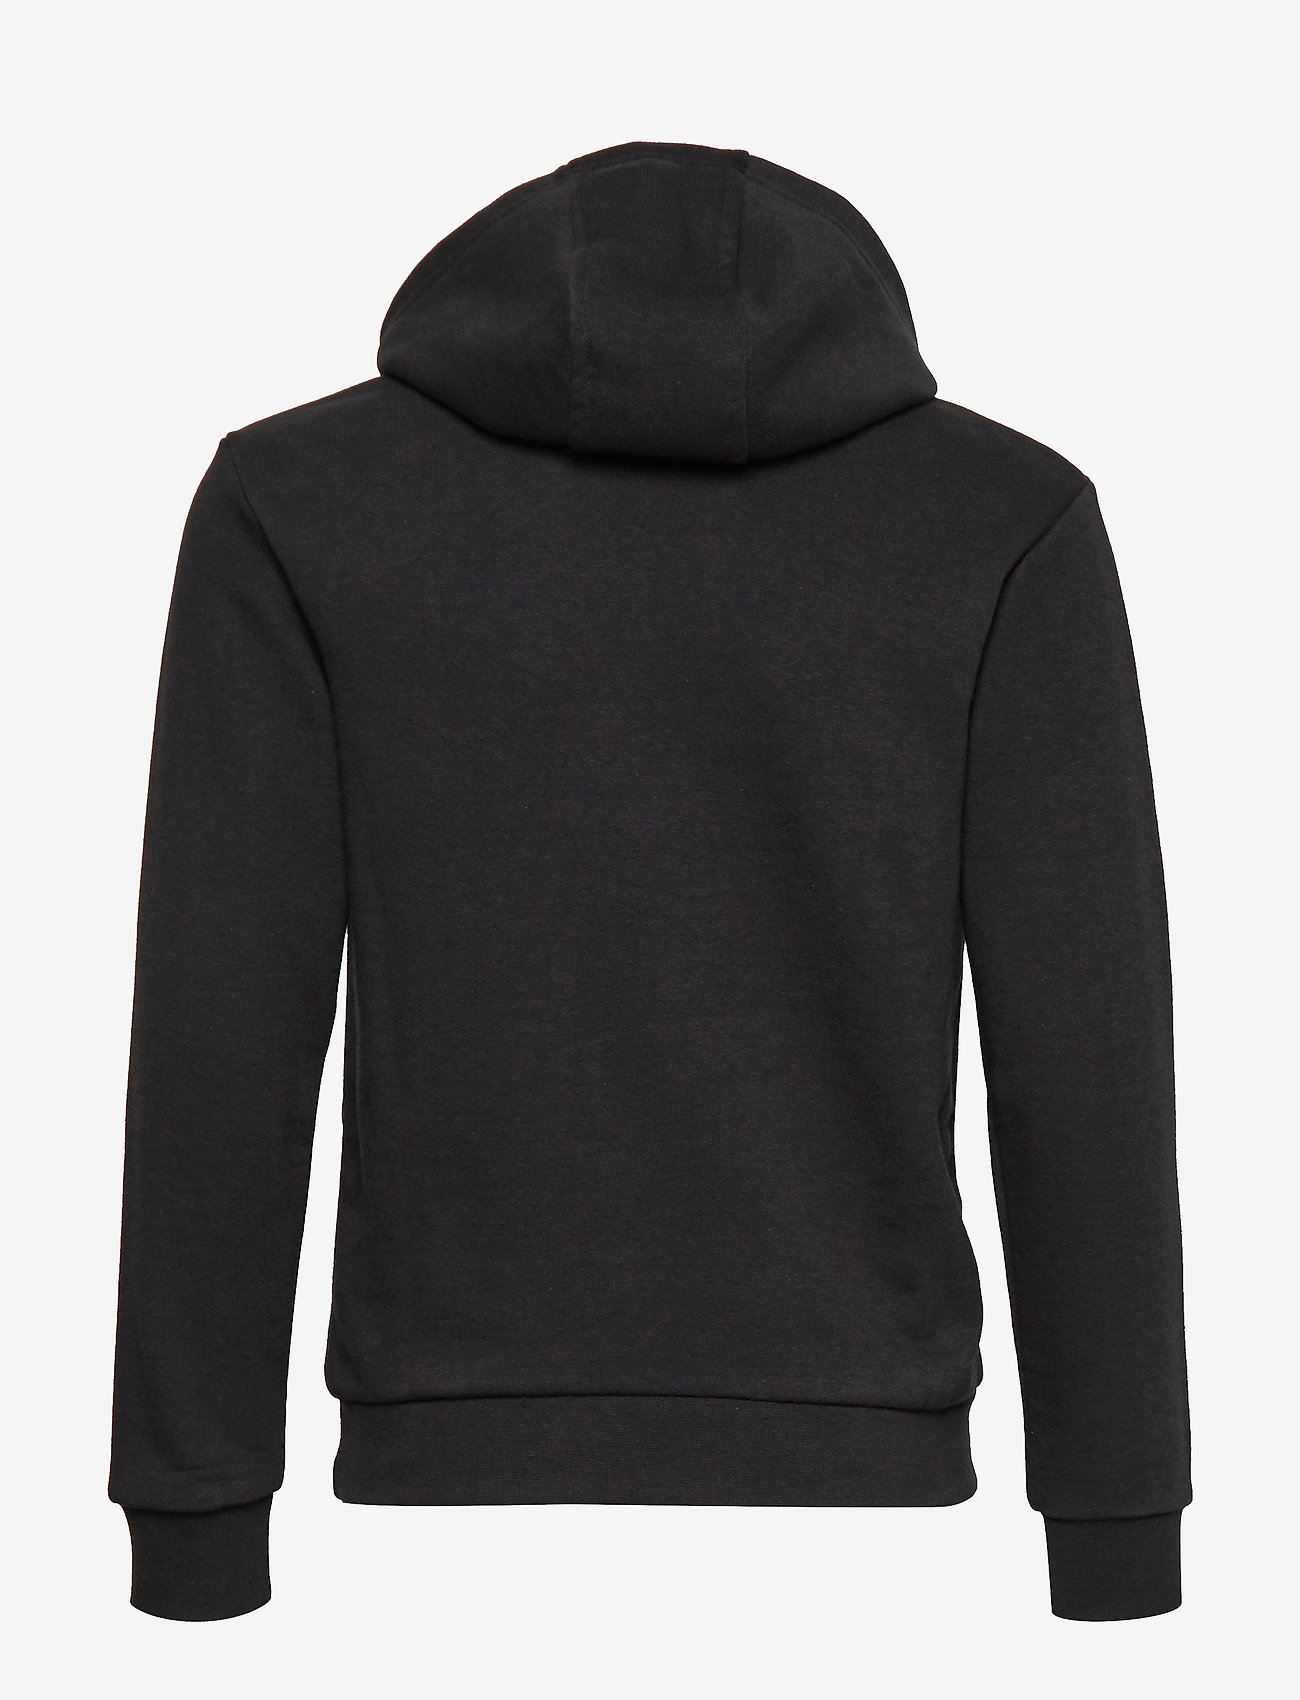 adidas Originals - TREFOIL HOODIE - hoodies - black/white - 1